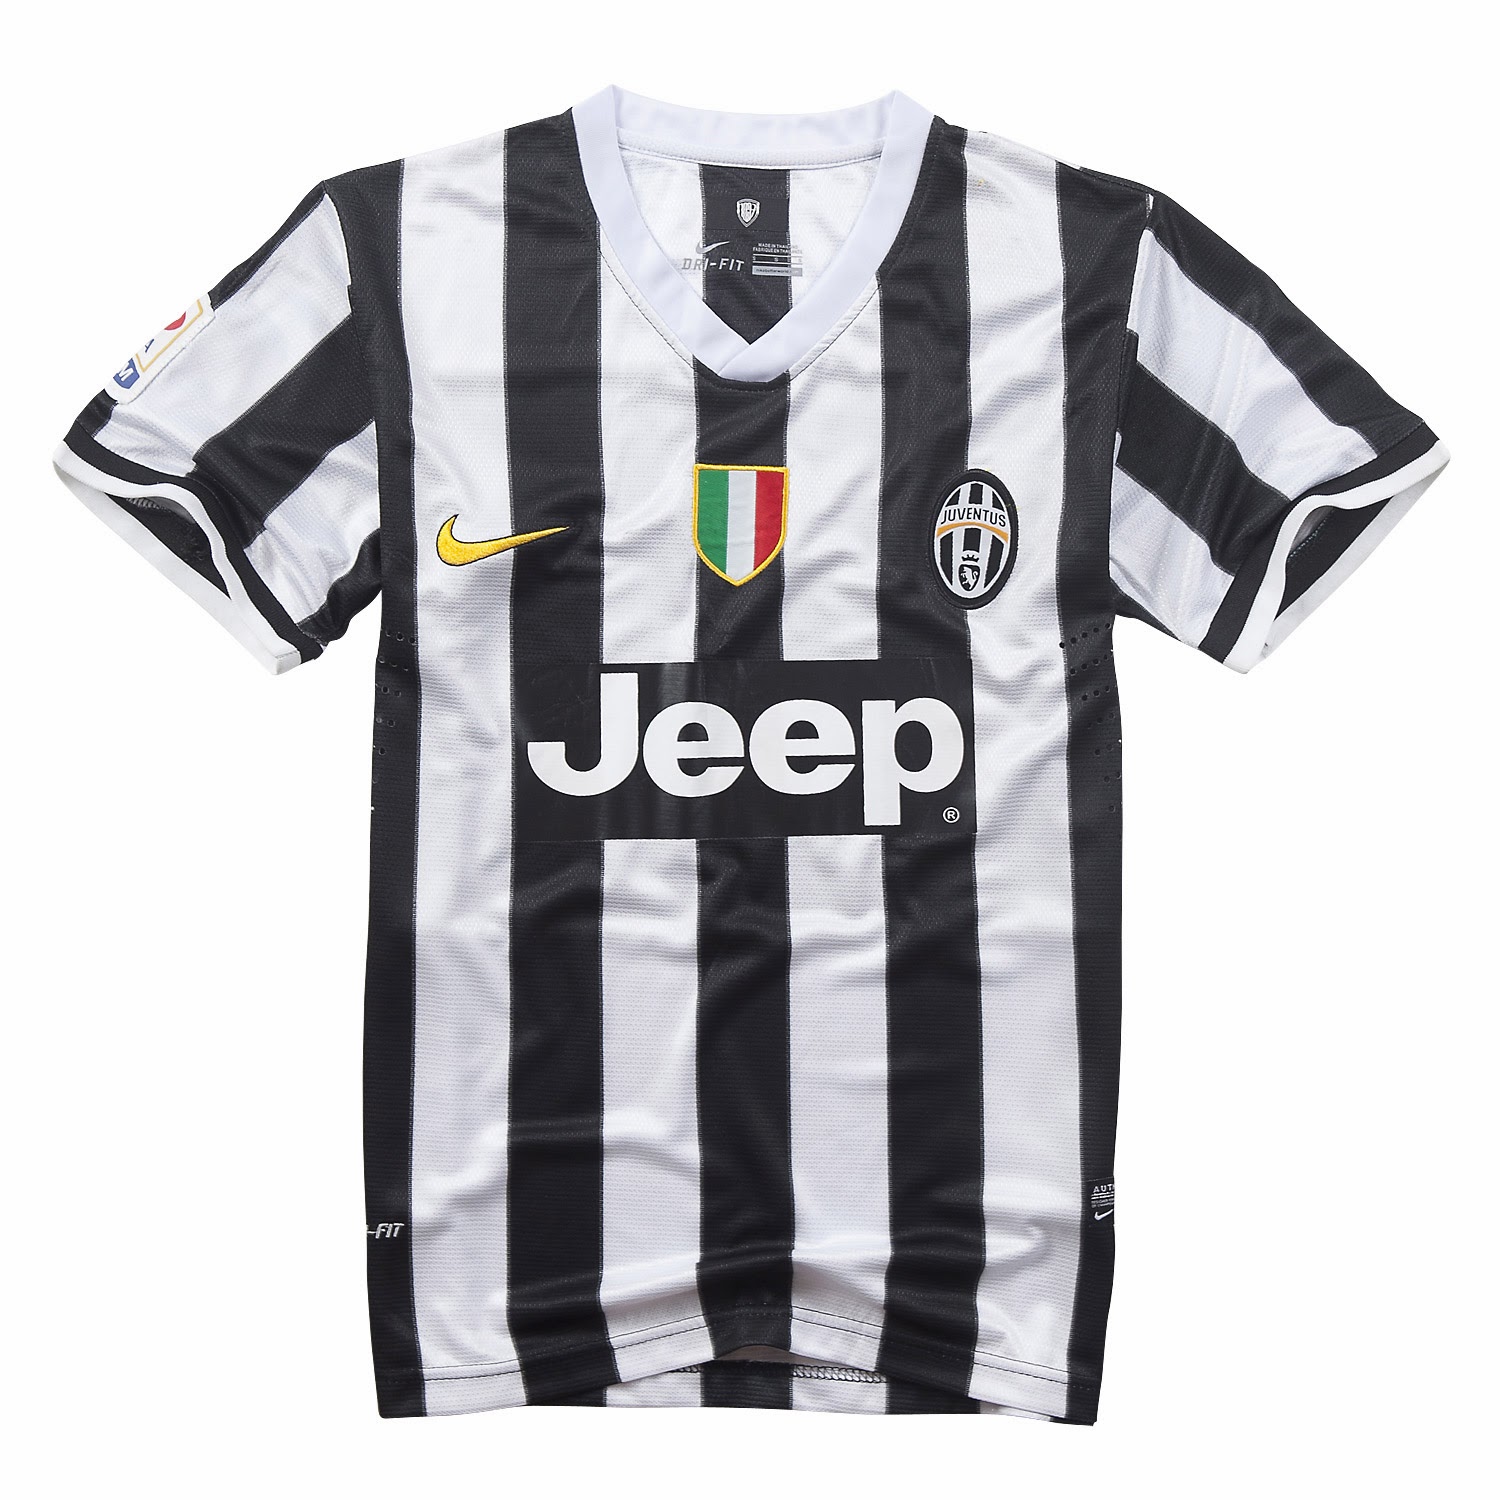 personalizar nuevo camisetas de fútbol 2014 2015: nueva camisetas de futbol Juventus 2014 baratas